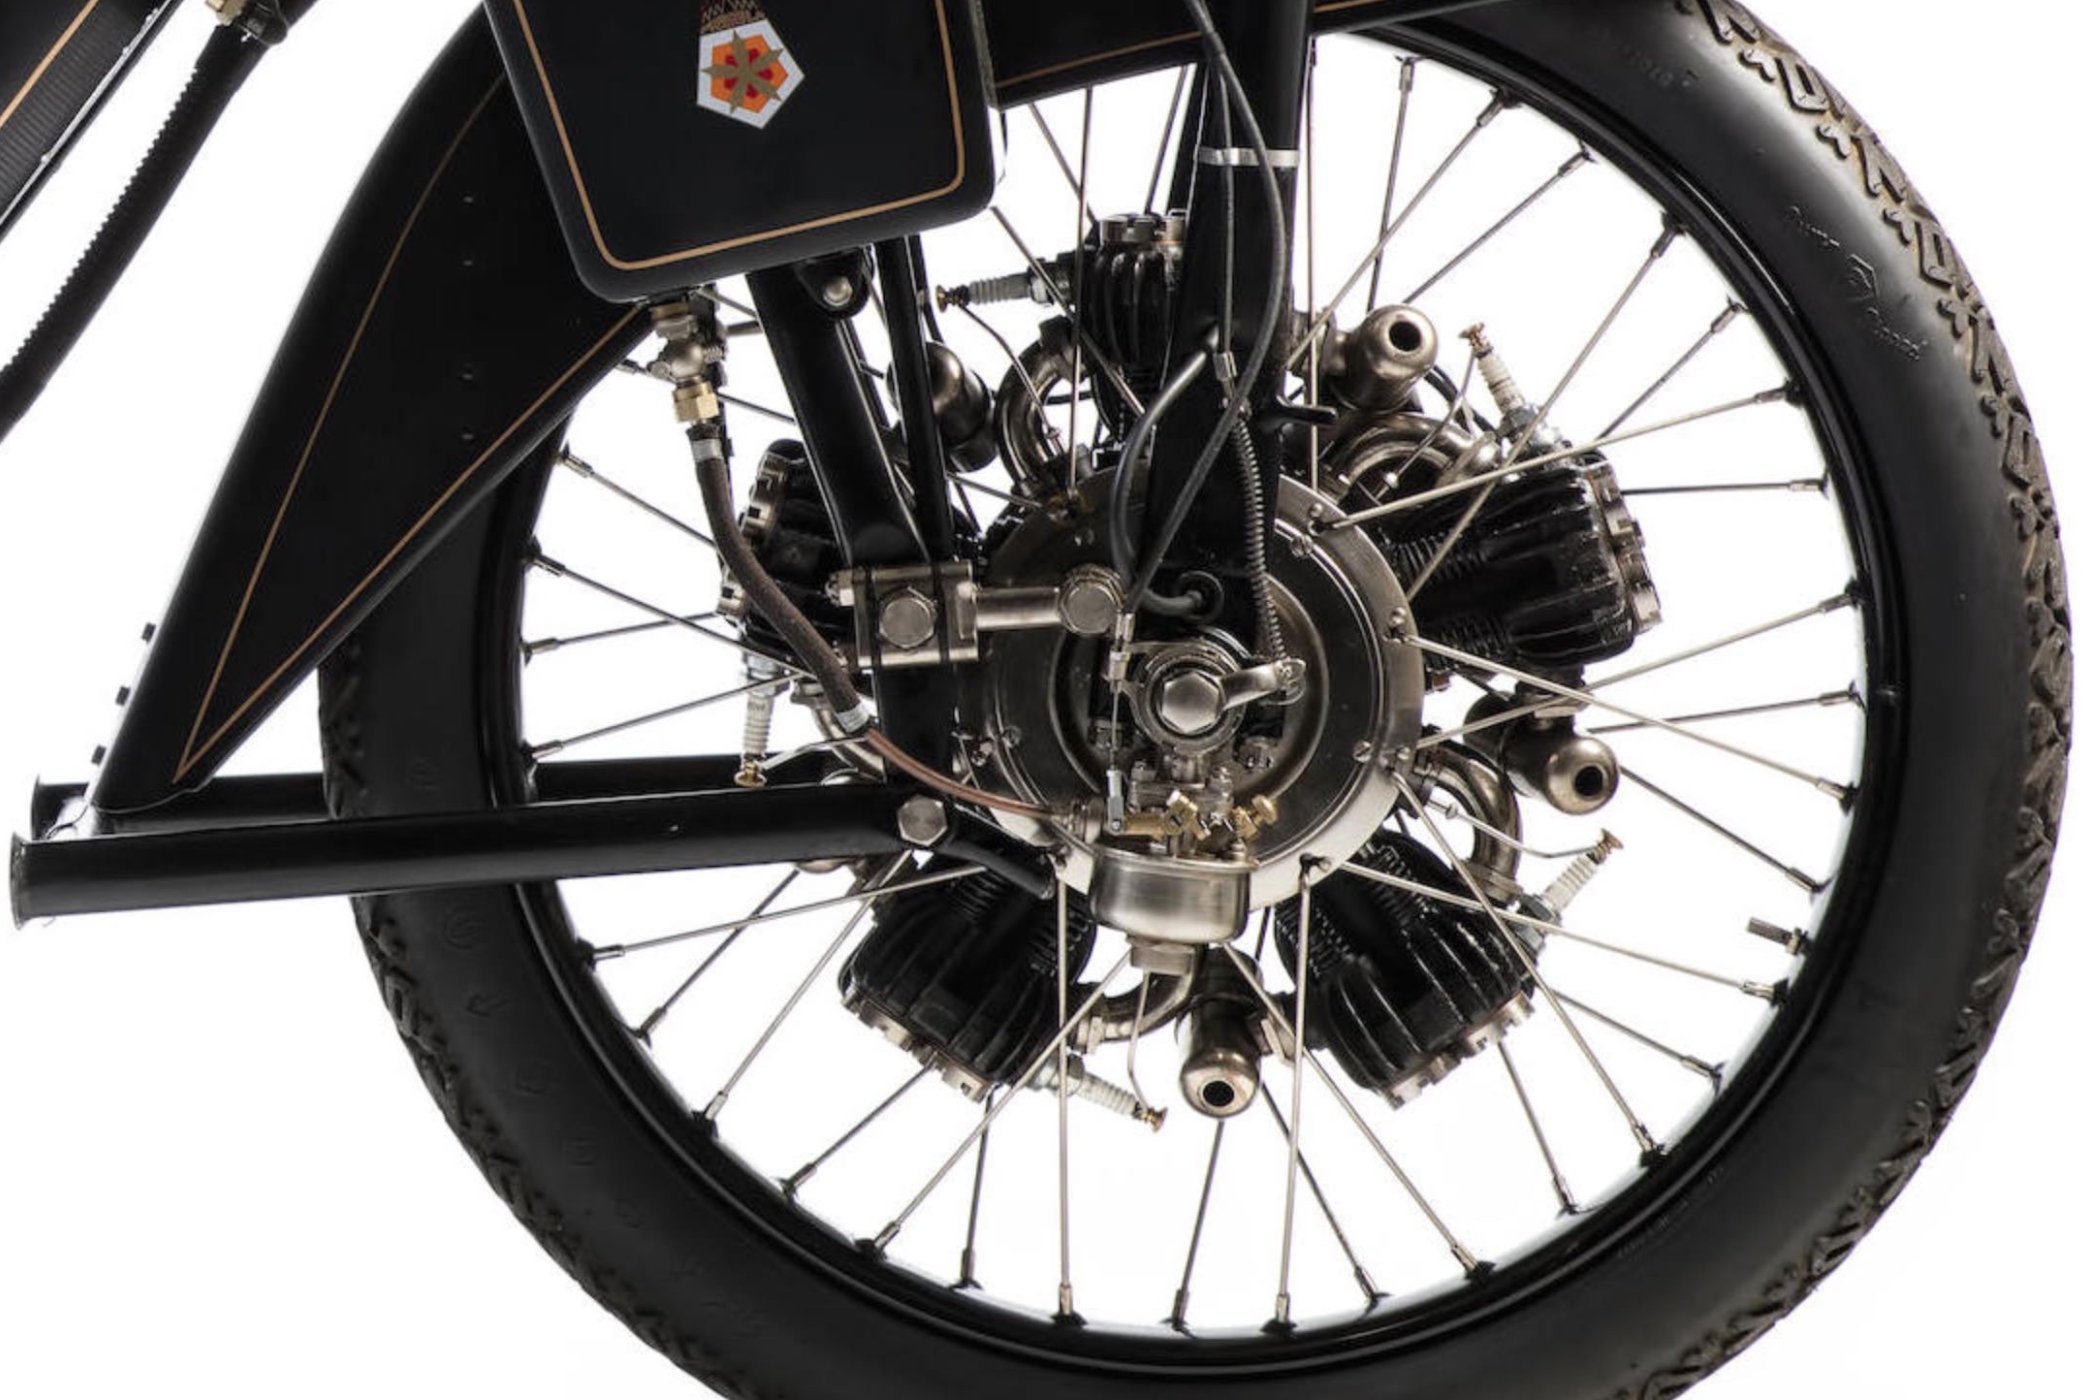 1922 Megola motorbike with front wheel mounted radial engine 3